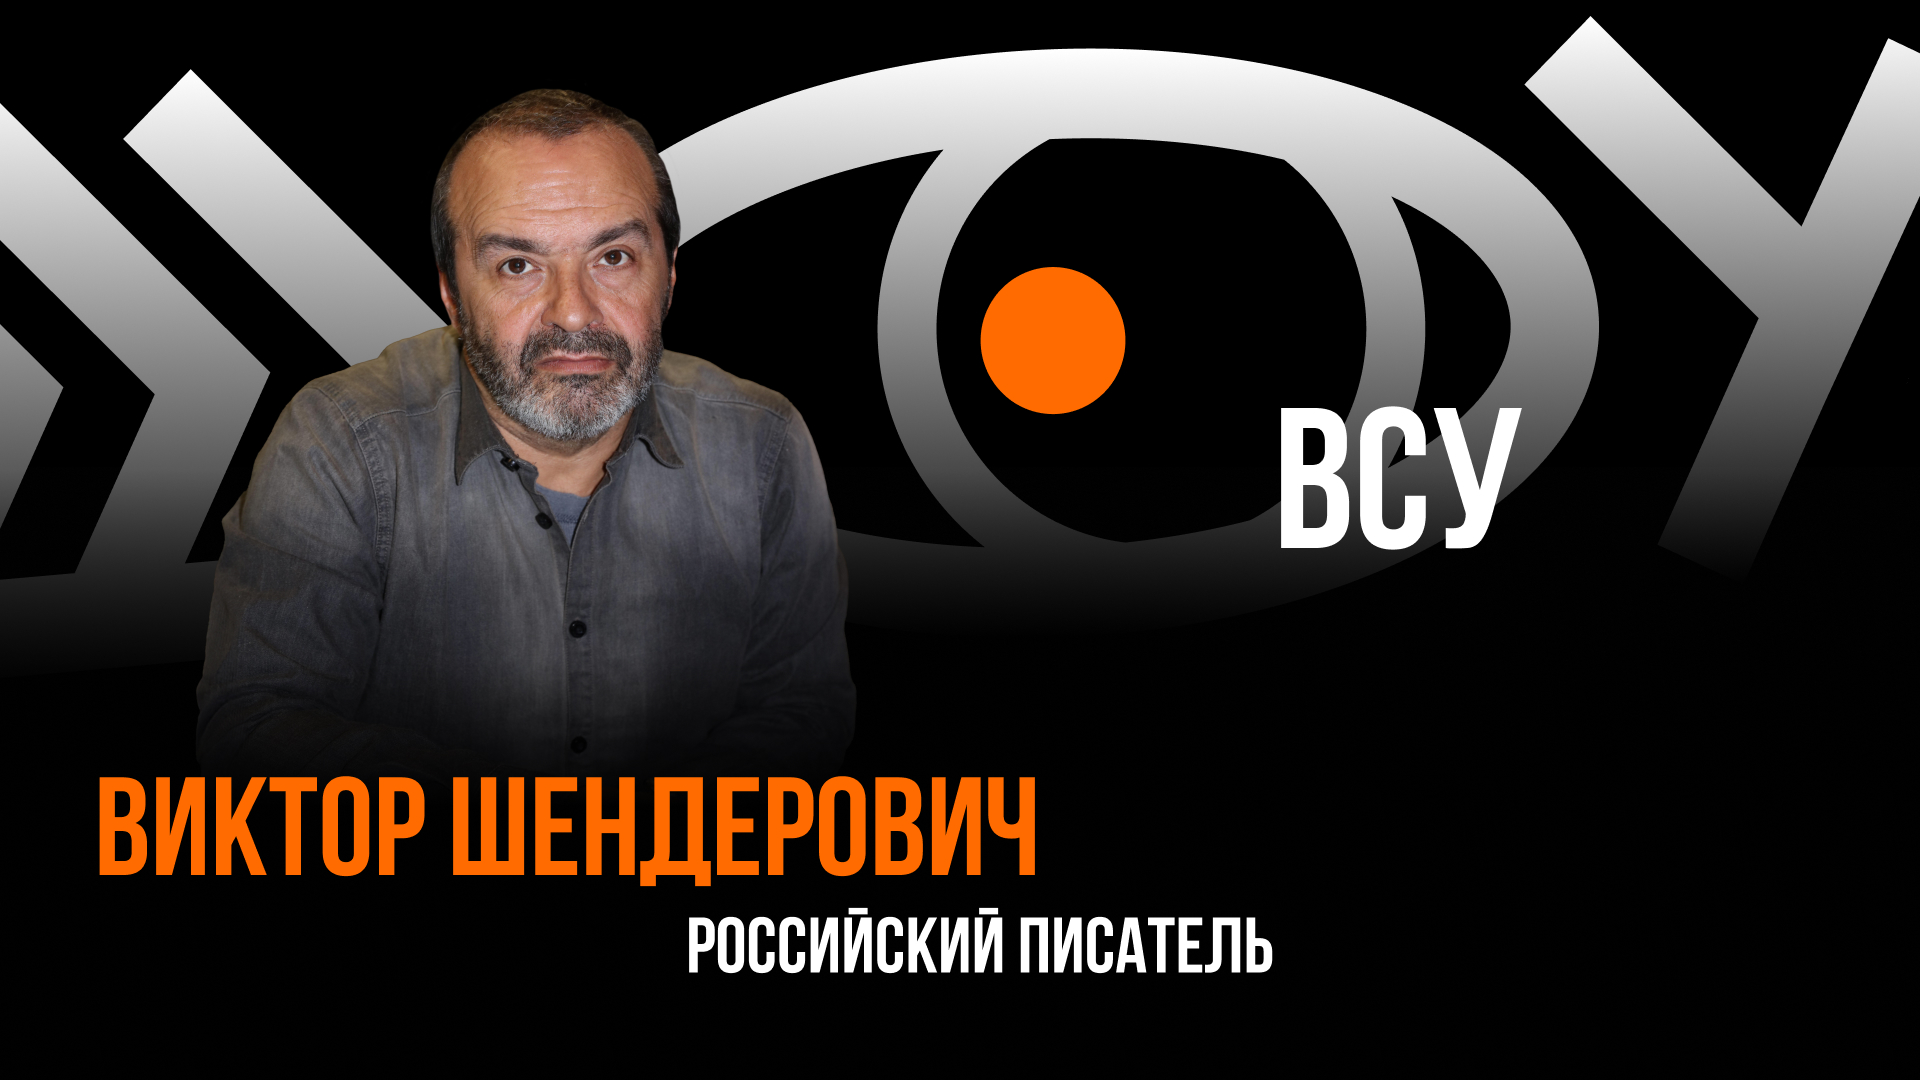 ВСУ / Пранк с Виктором Шенедровичем